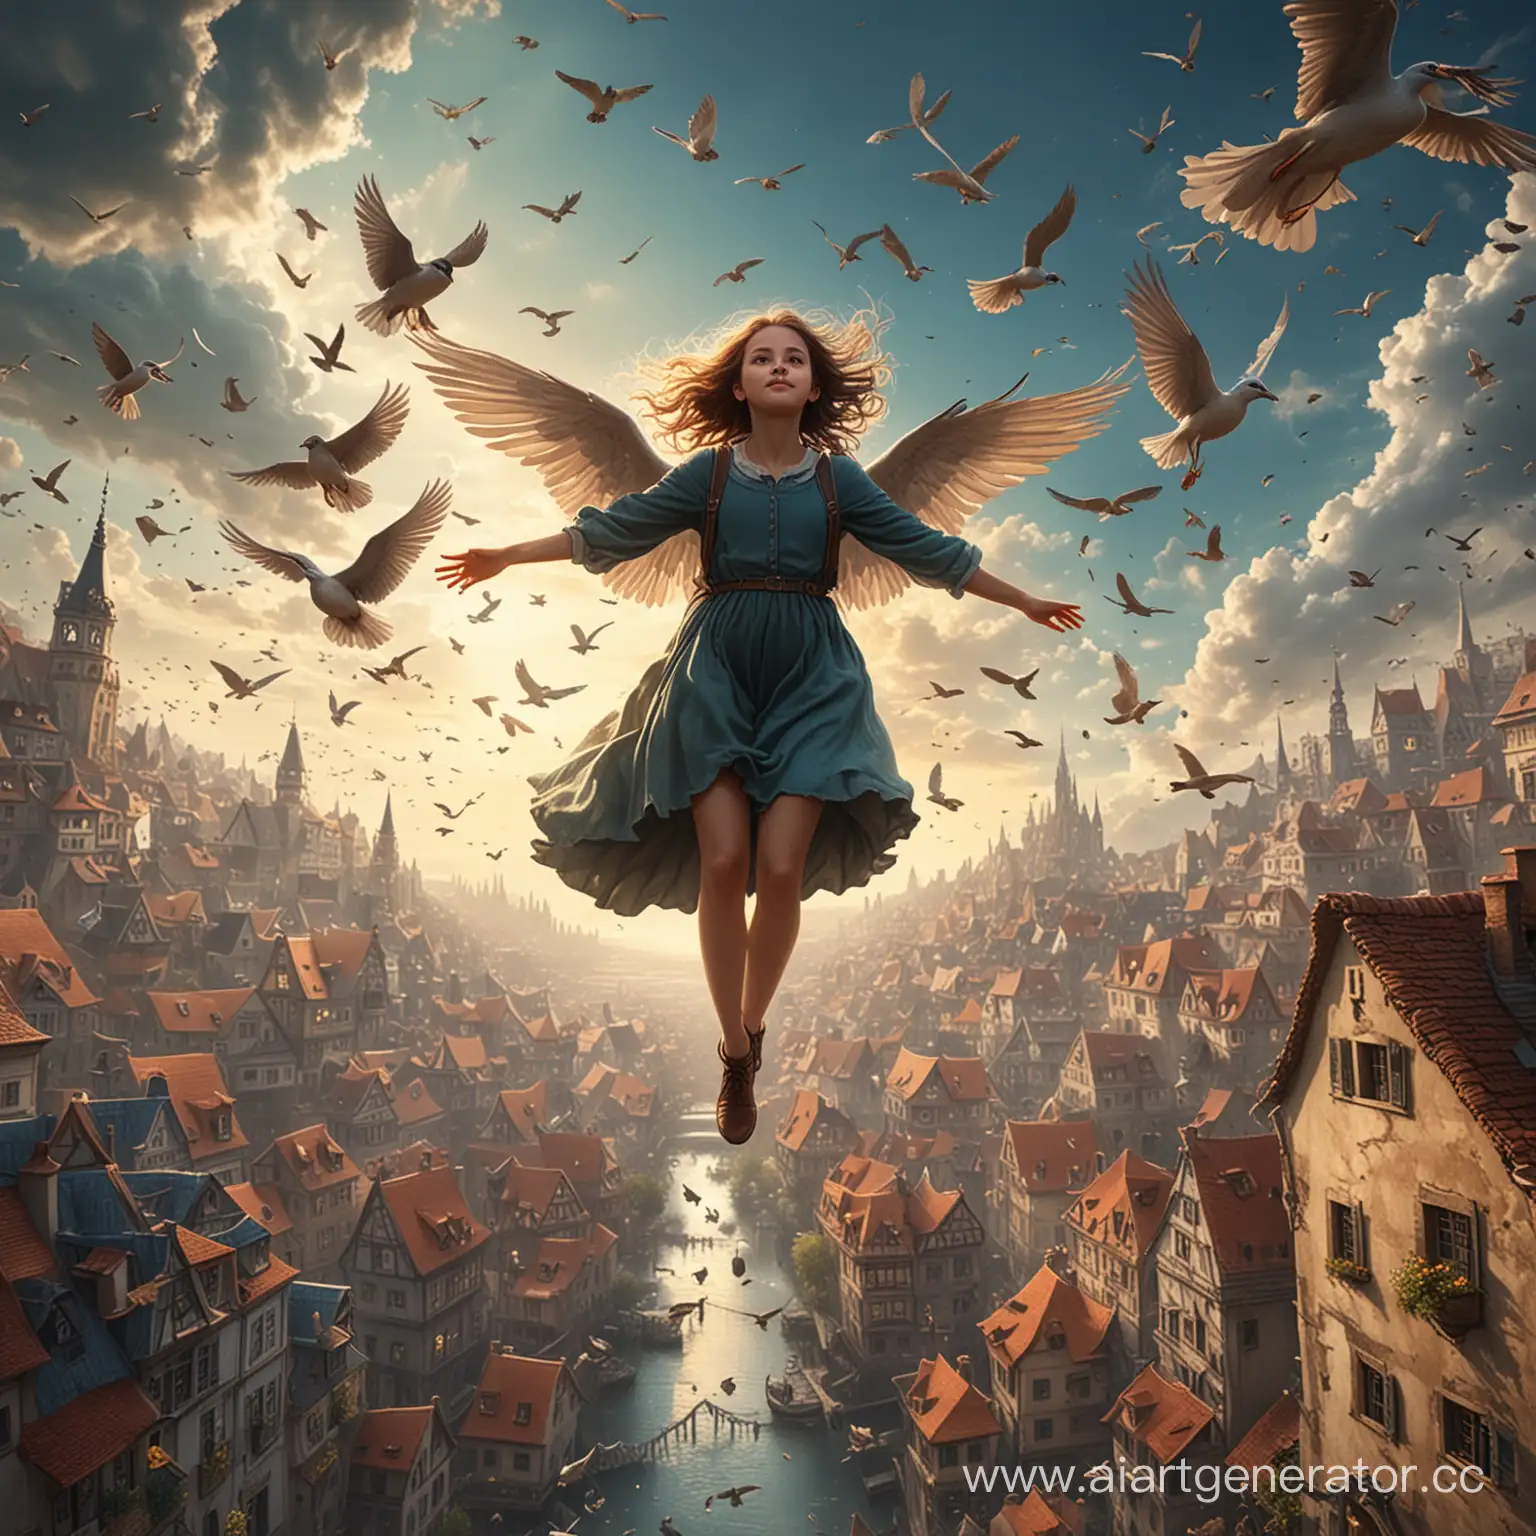 Девочка с крыльями летит в небе окруженная птицами. Внизу видно сказочную стану